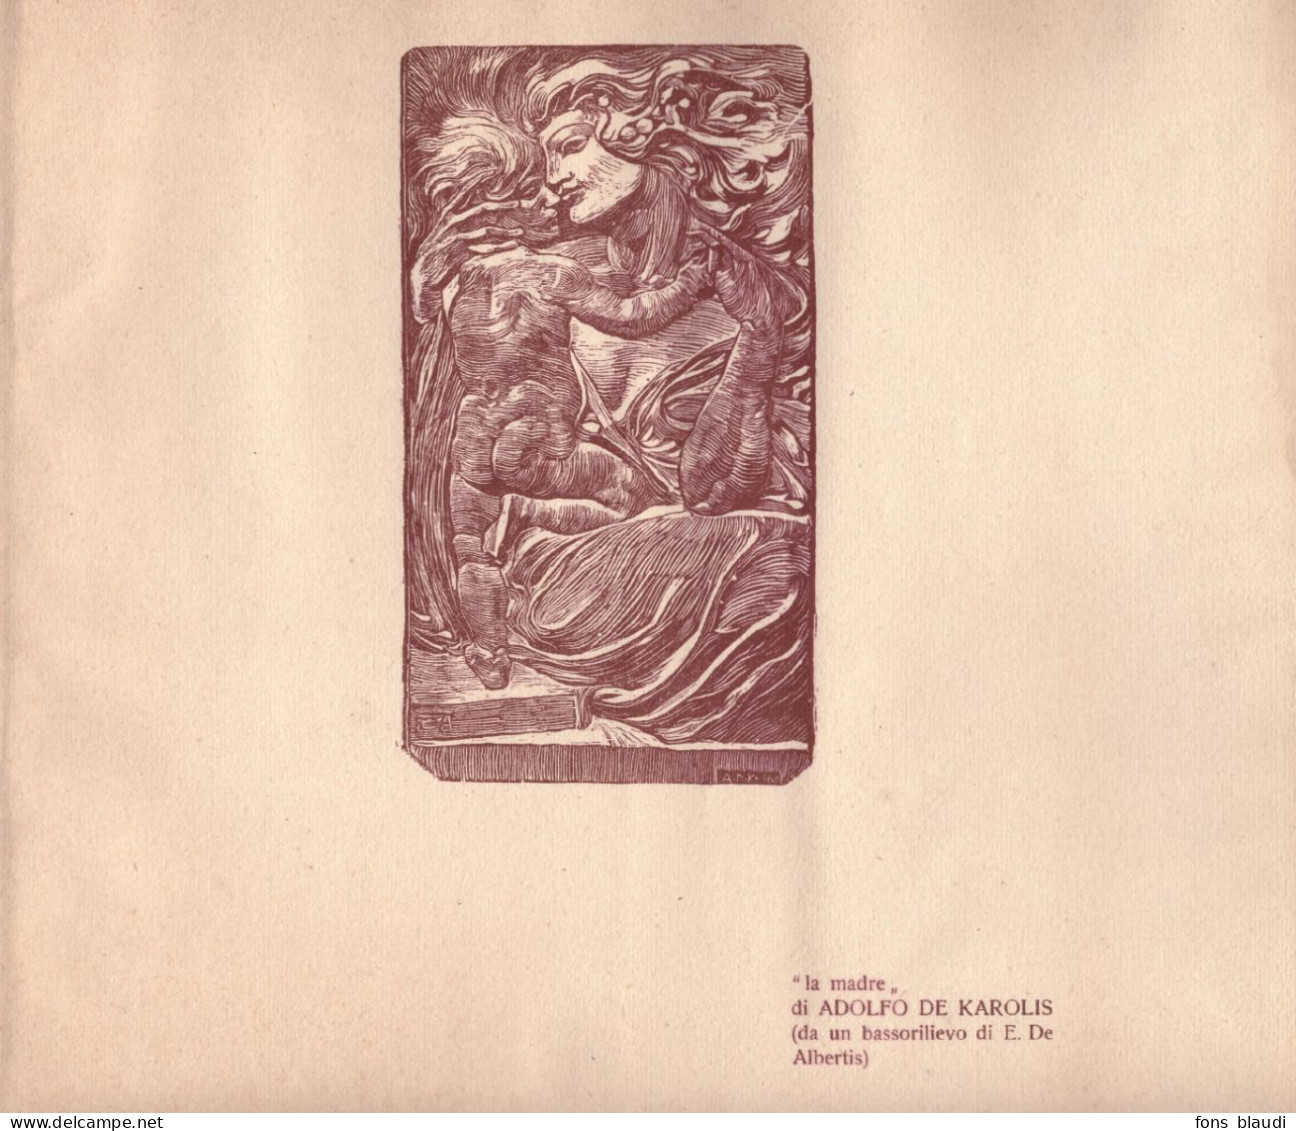 1912 - Xylographie Originale - Adolfo De Karolis (Montefiore Dell'Aso 1874 - Rome 1928) - La Madre - Stiche & Gravuren